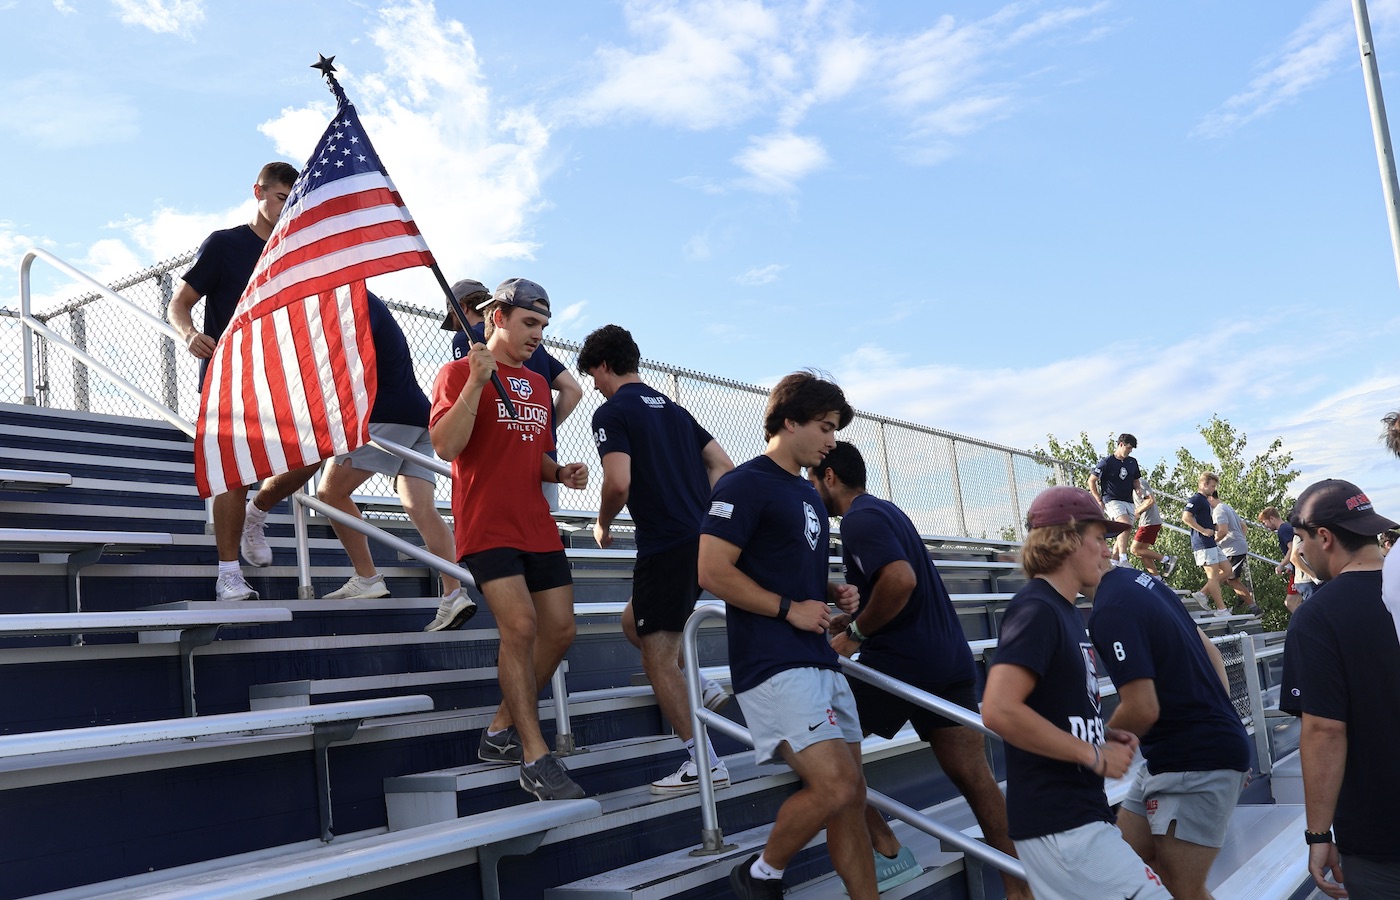 Lacrosse players running up bleacher steps, holding flag